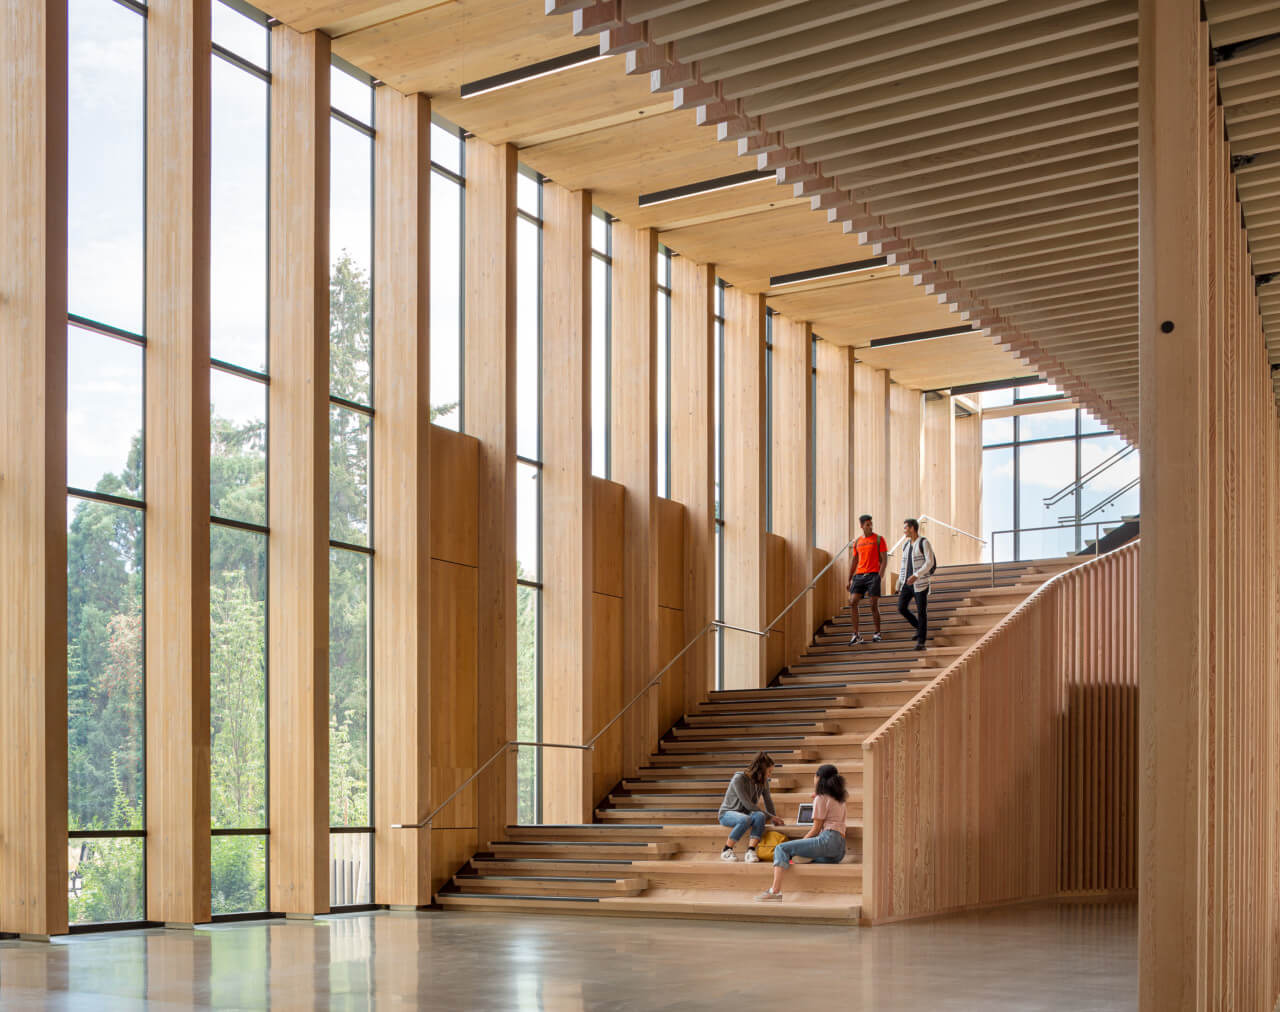 俄勒冈州立大学林学院内部由木材制成，有多层空间